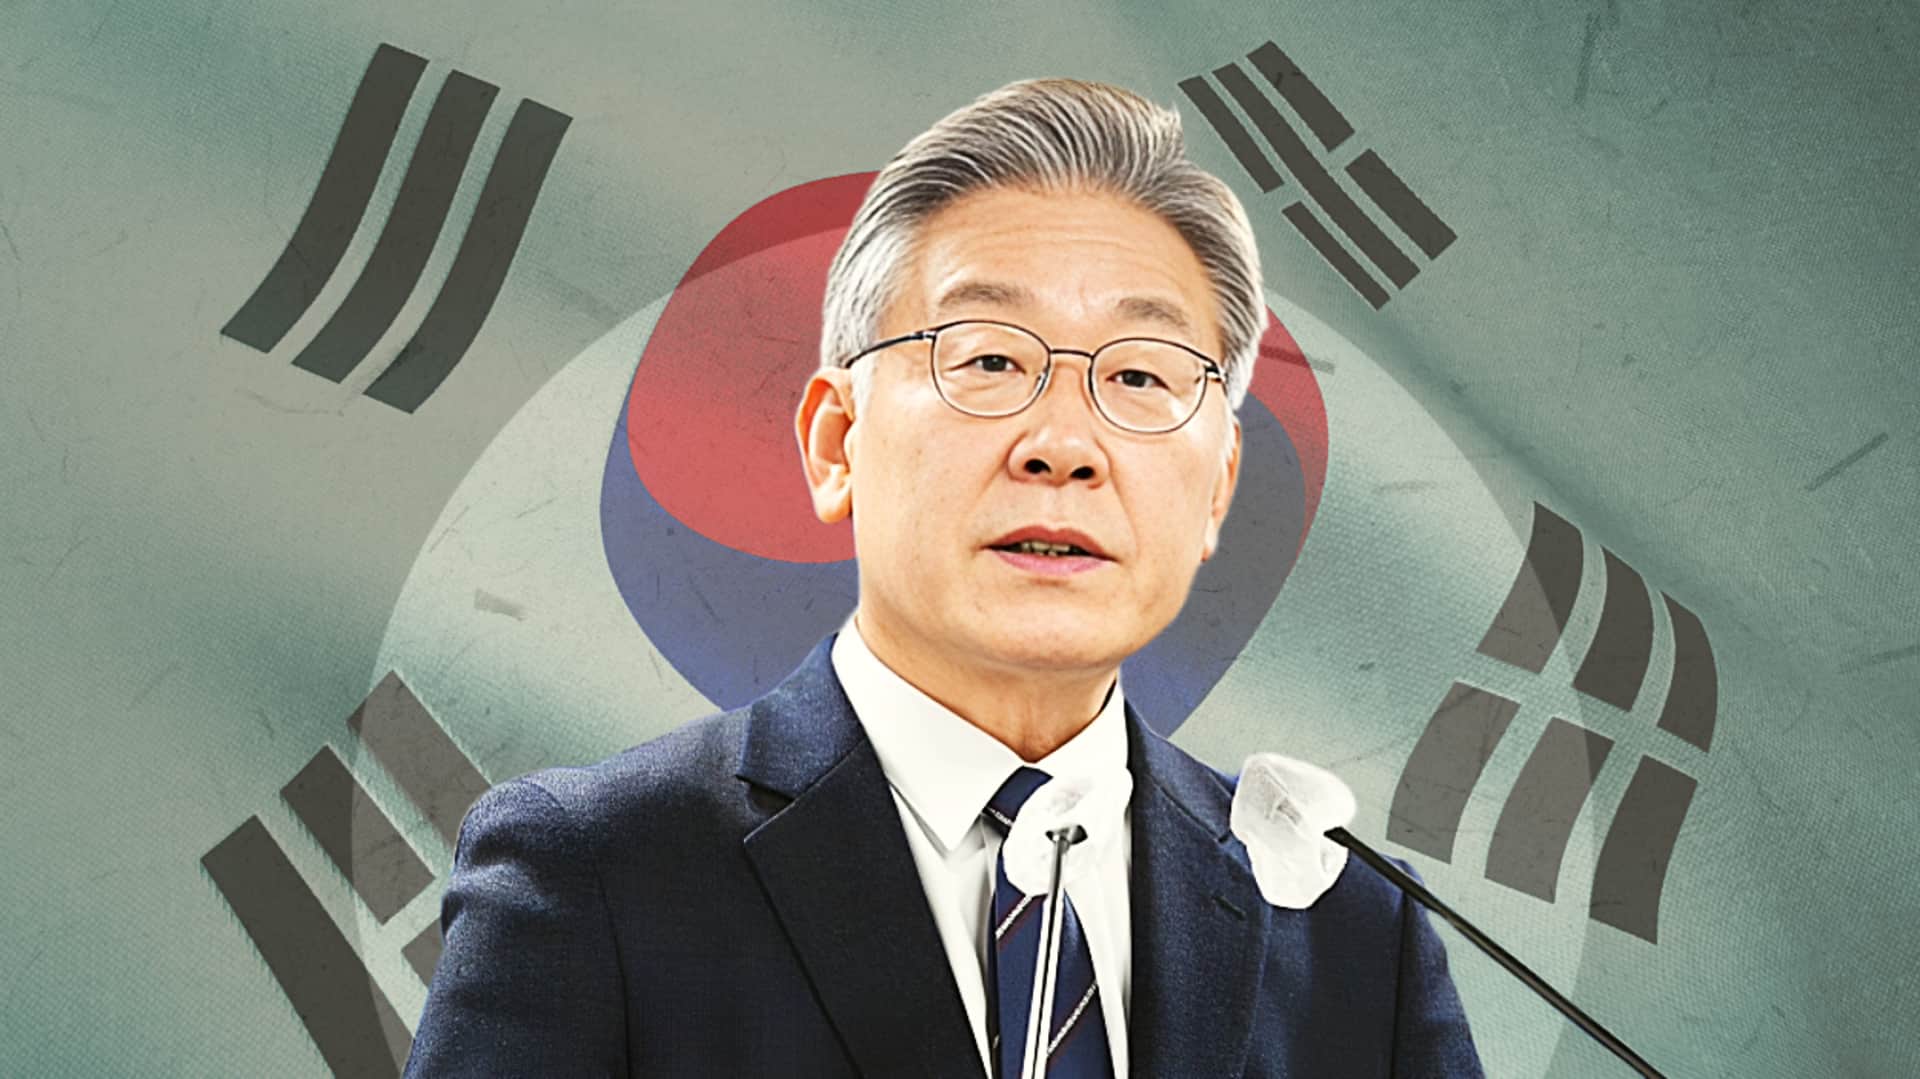 दक्षिण कोरिया: मुख्य विपक्षी नेता पर चाकू से हमला, हालत गंभीर